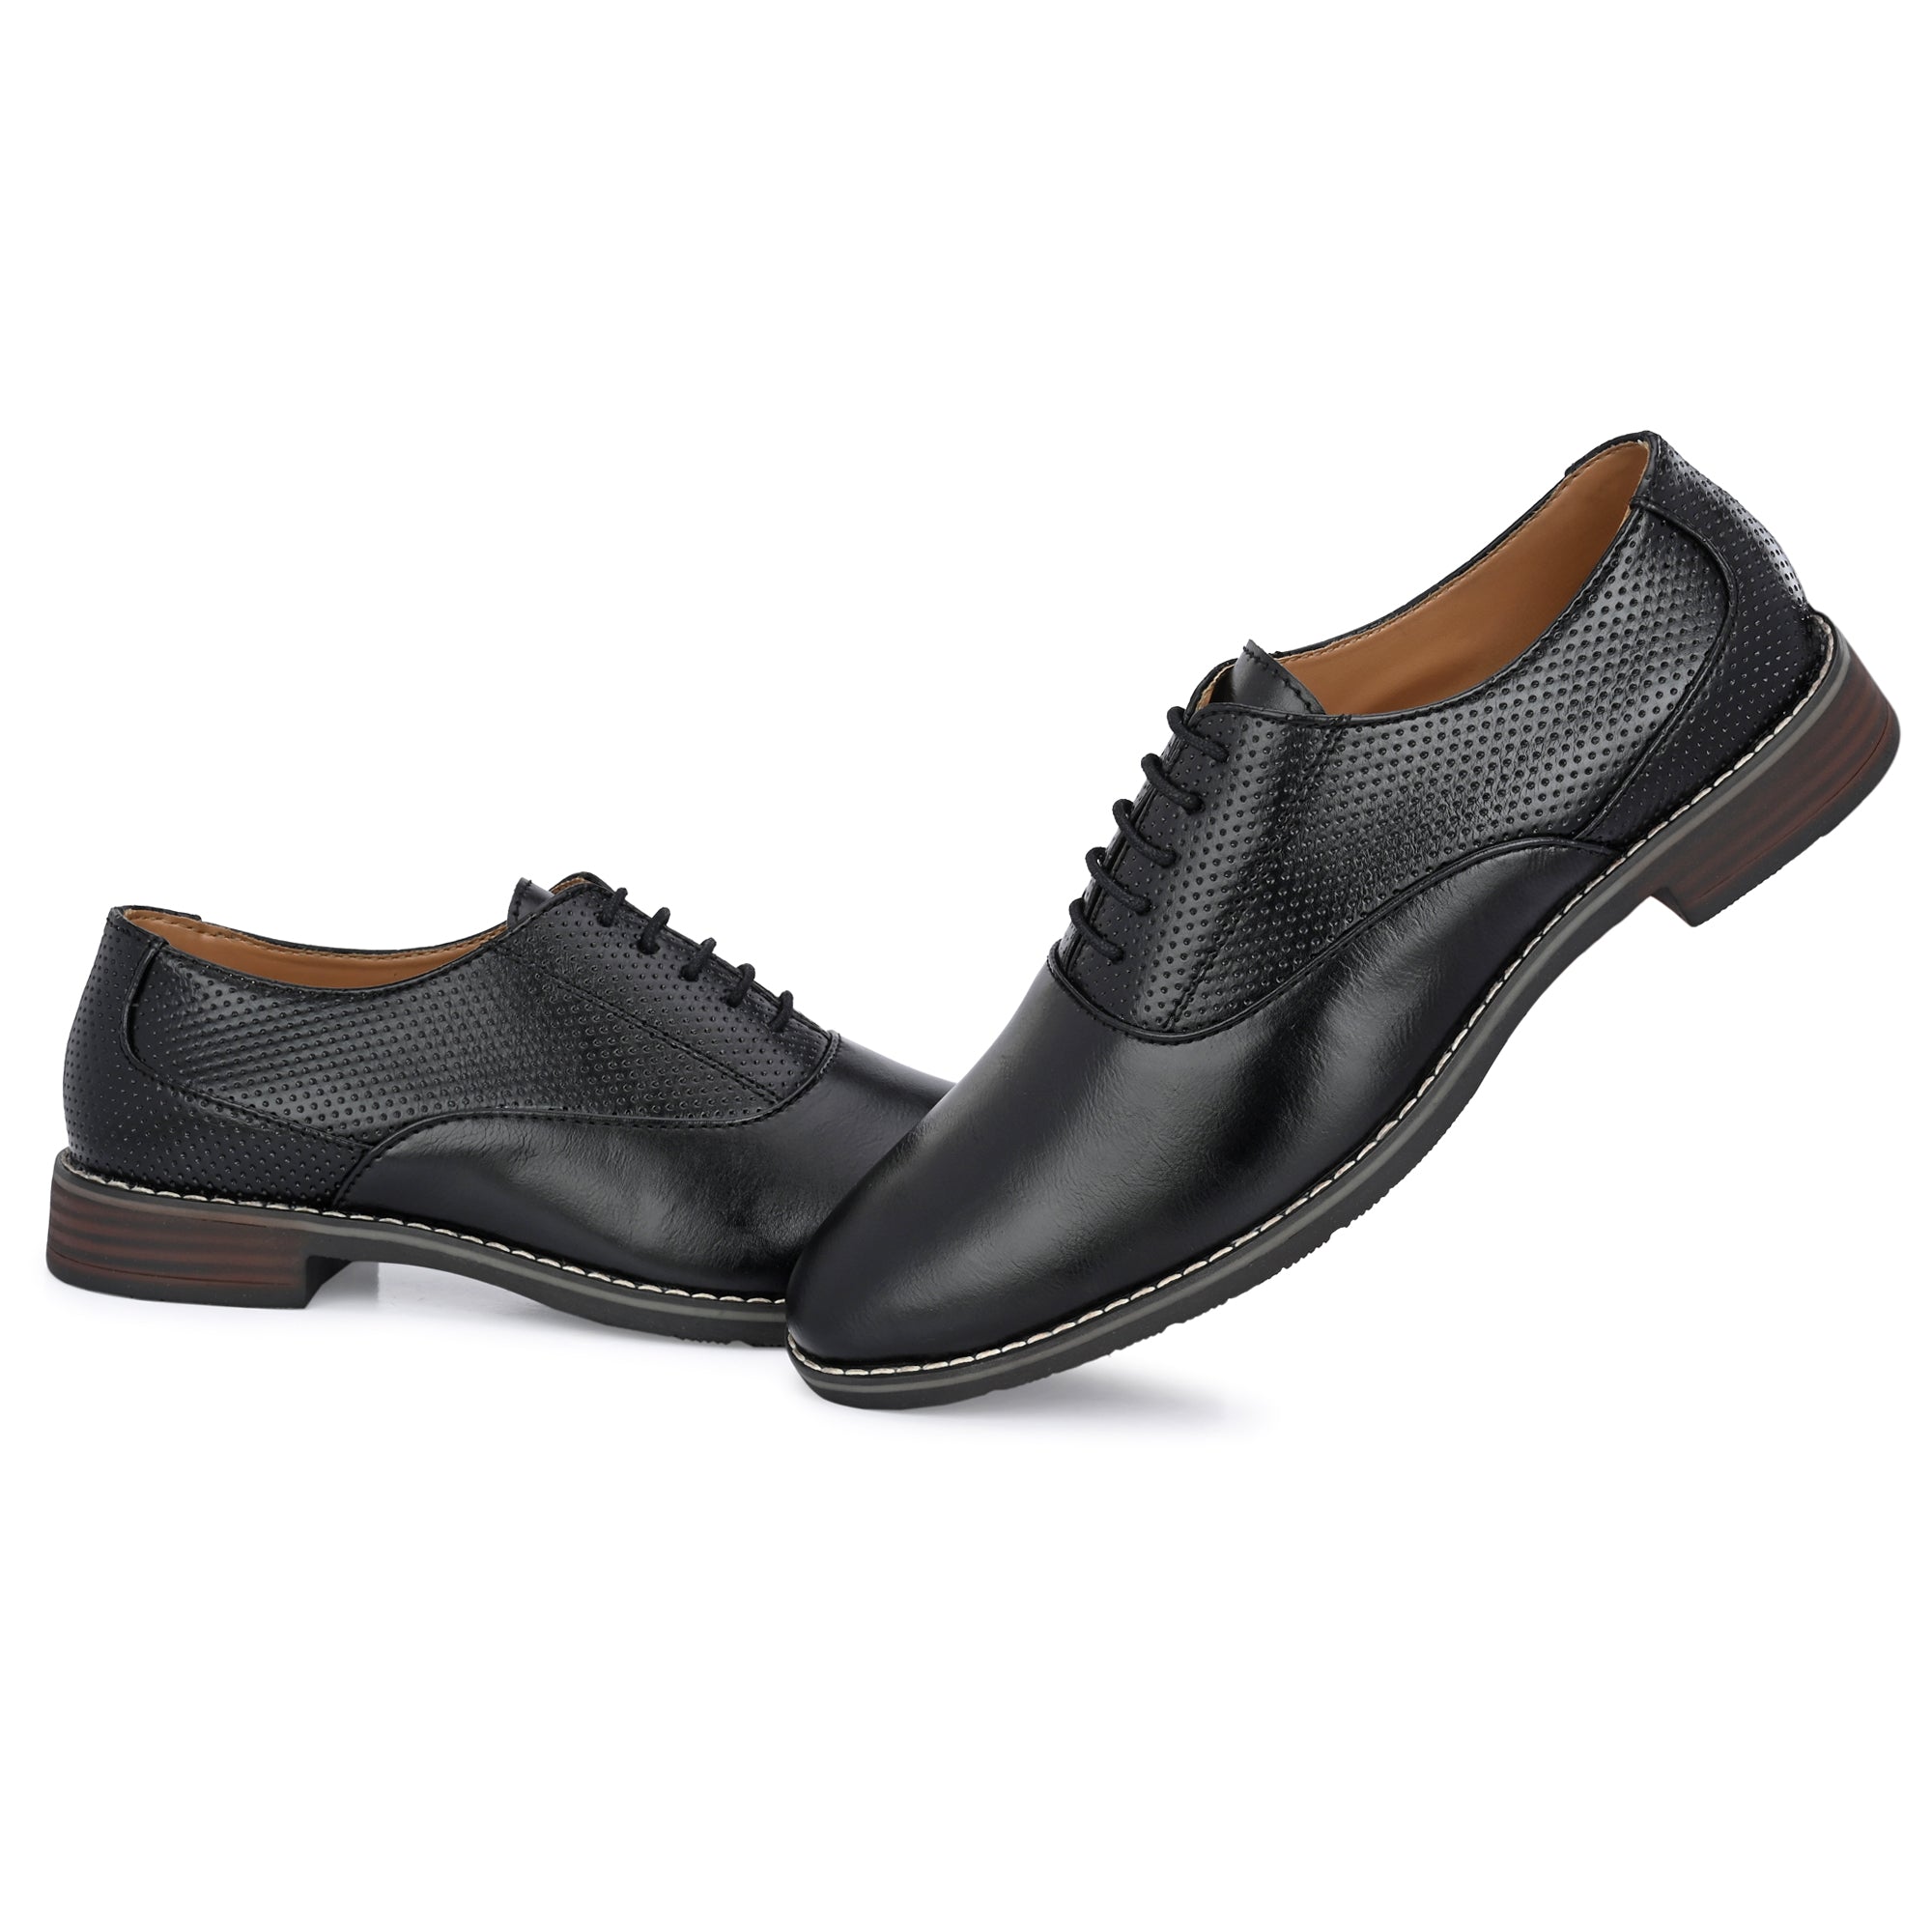 black-formal-lace-up-attitudist-shoes-for-men-sp7a